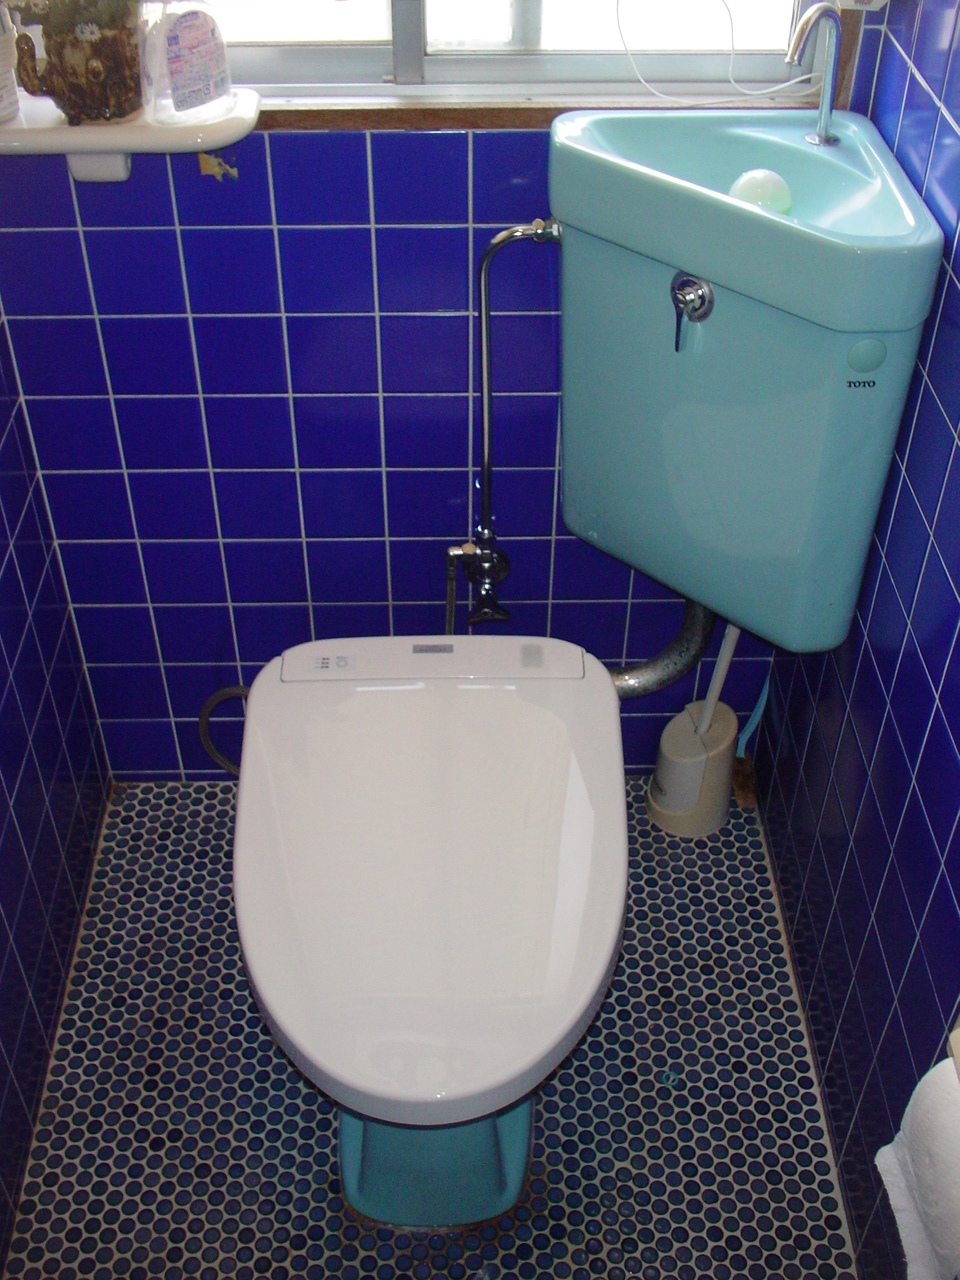 賃貸物件のトイレなので工事に制限はありますが温水洗浄便座が欲しいんです